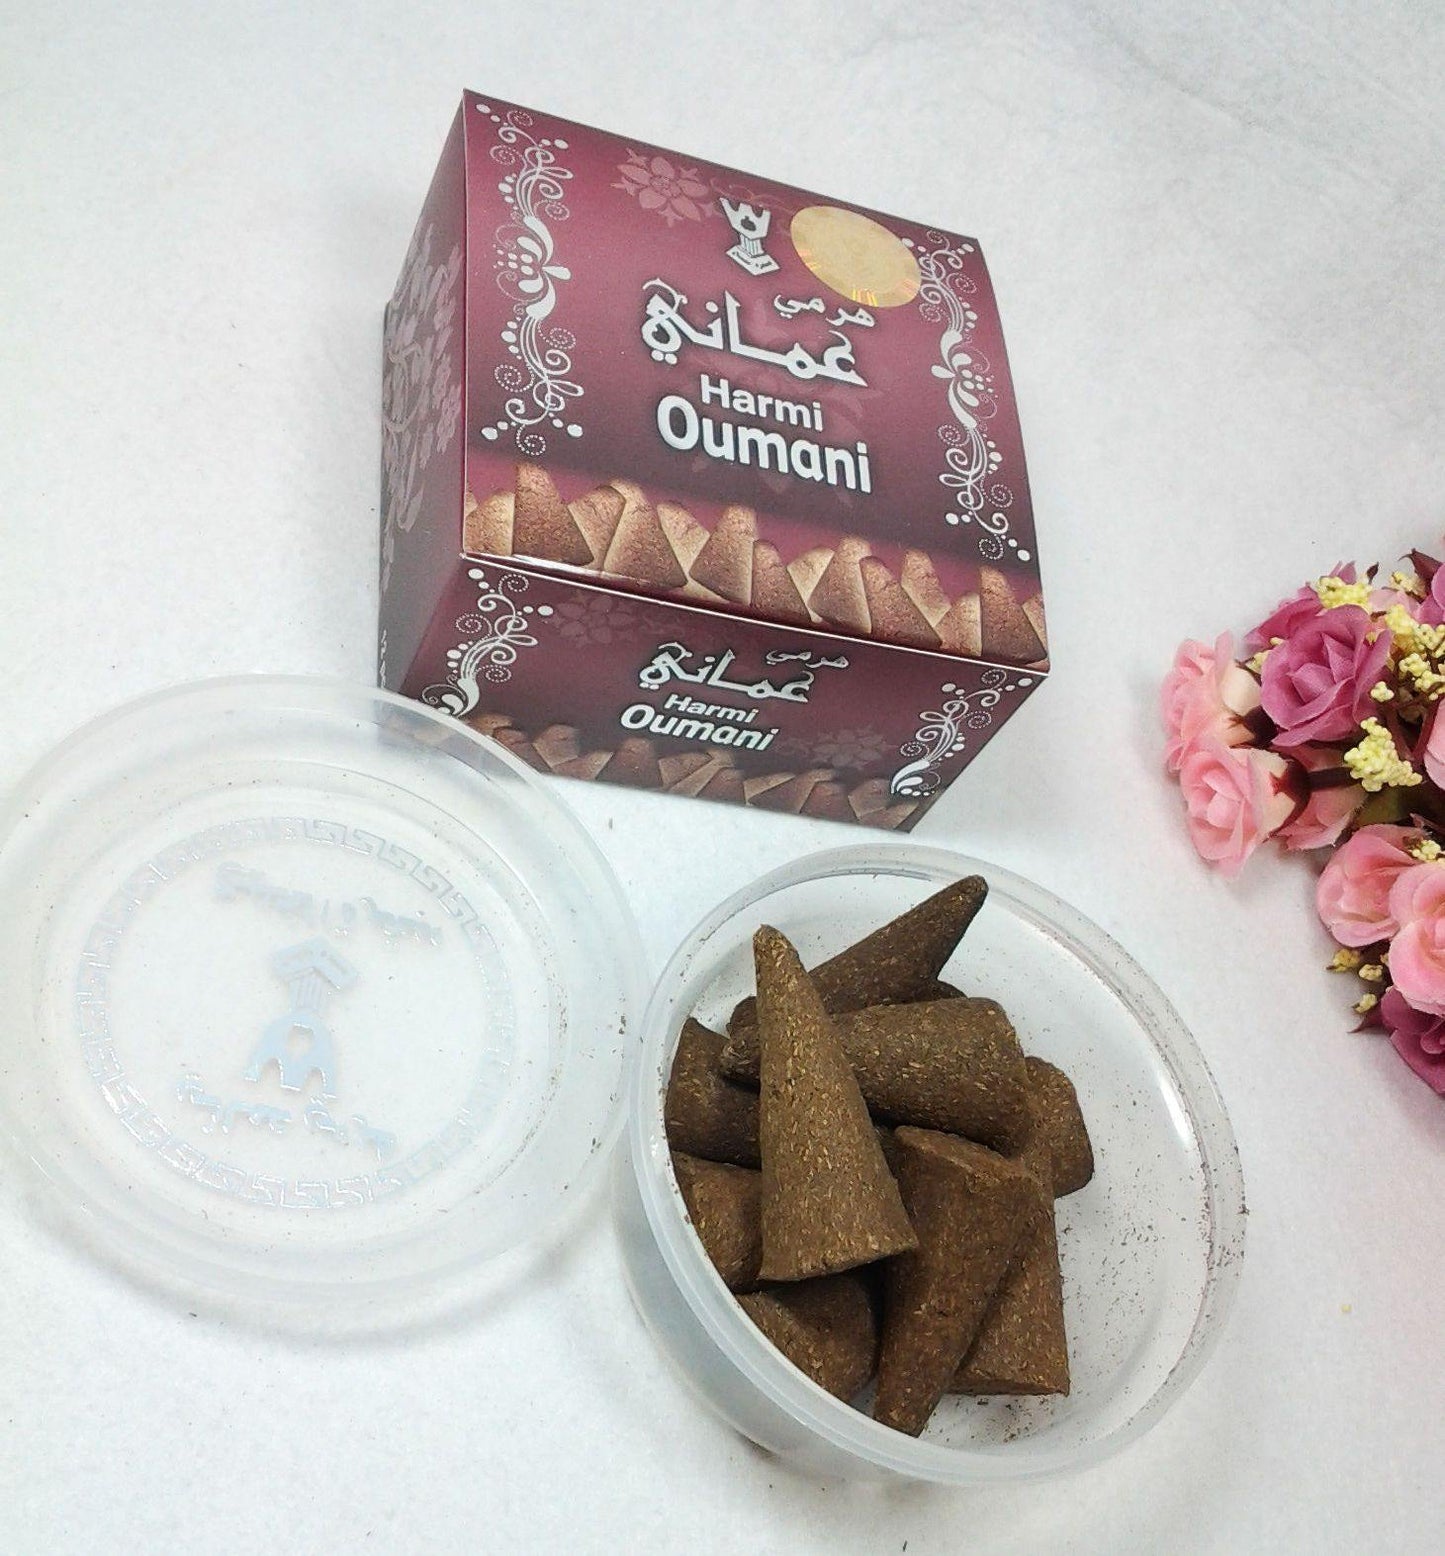 Harmi Oumani Perfume Home Incense Saudi Arabian Weihrauch Encens 40g بخور هرمي - Arabian Shopping Zone